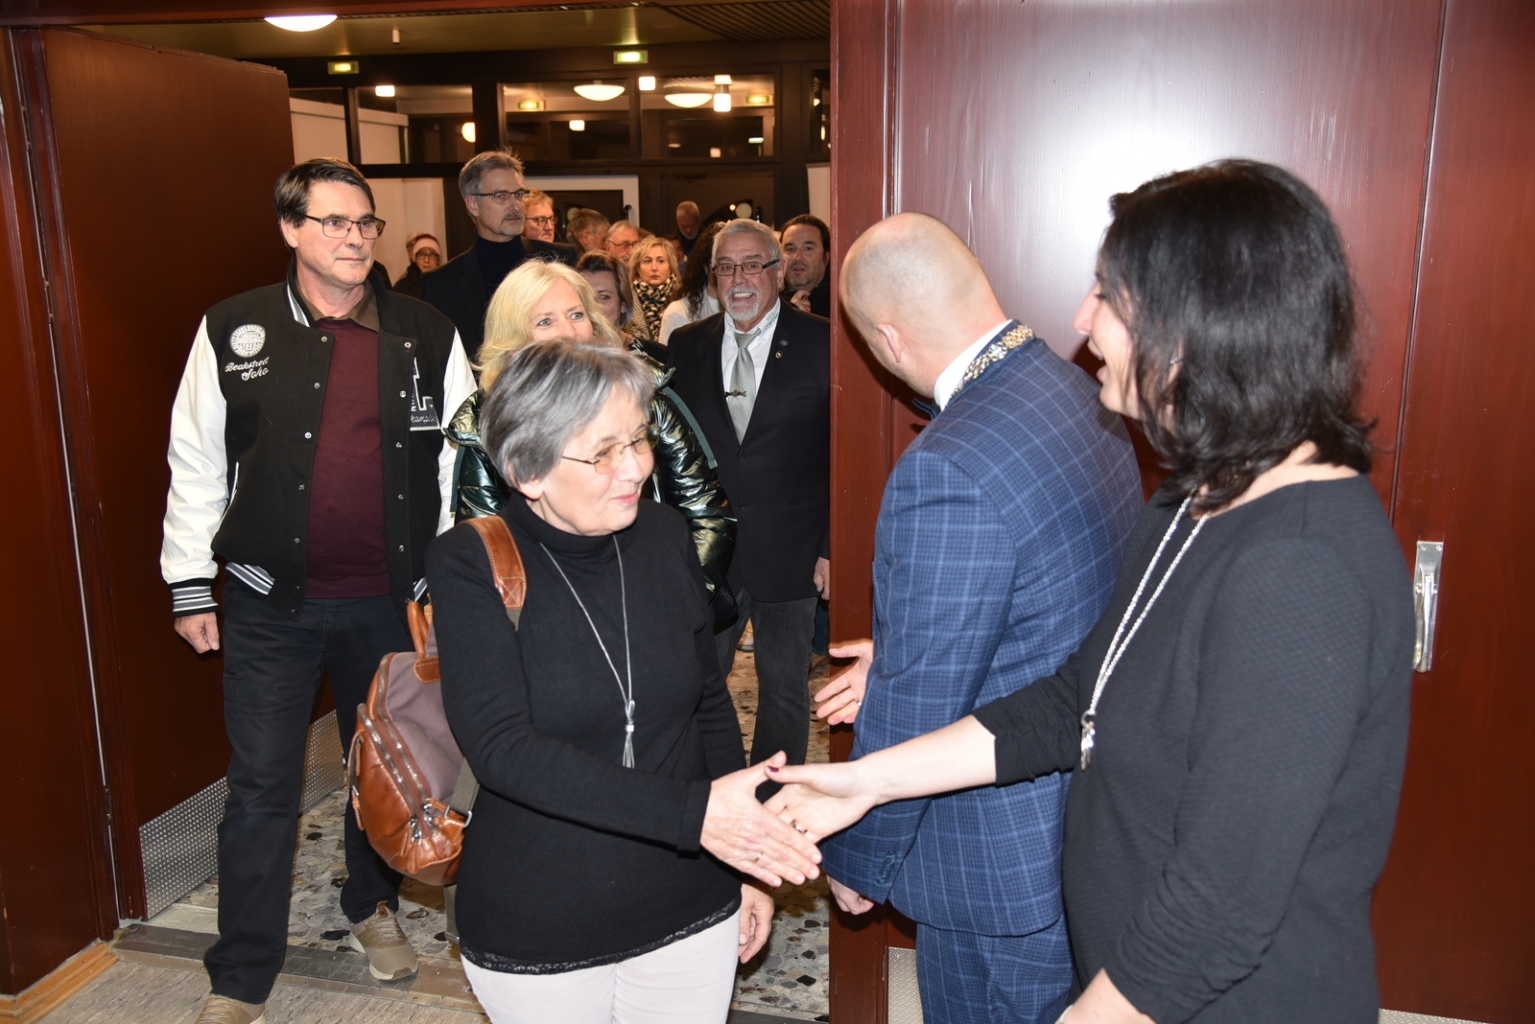 Viele Menschen schüttelten die Hände von Bürgermeister Seidel und Ehefrau an der Eingangstür.